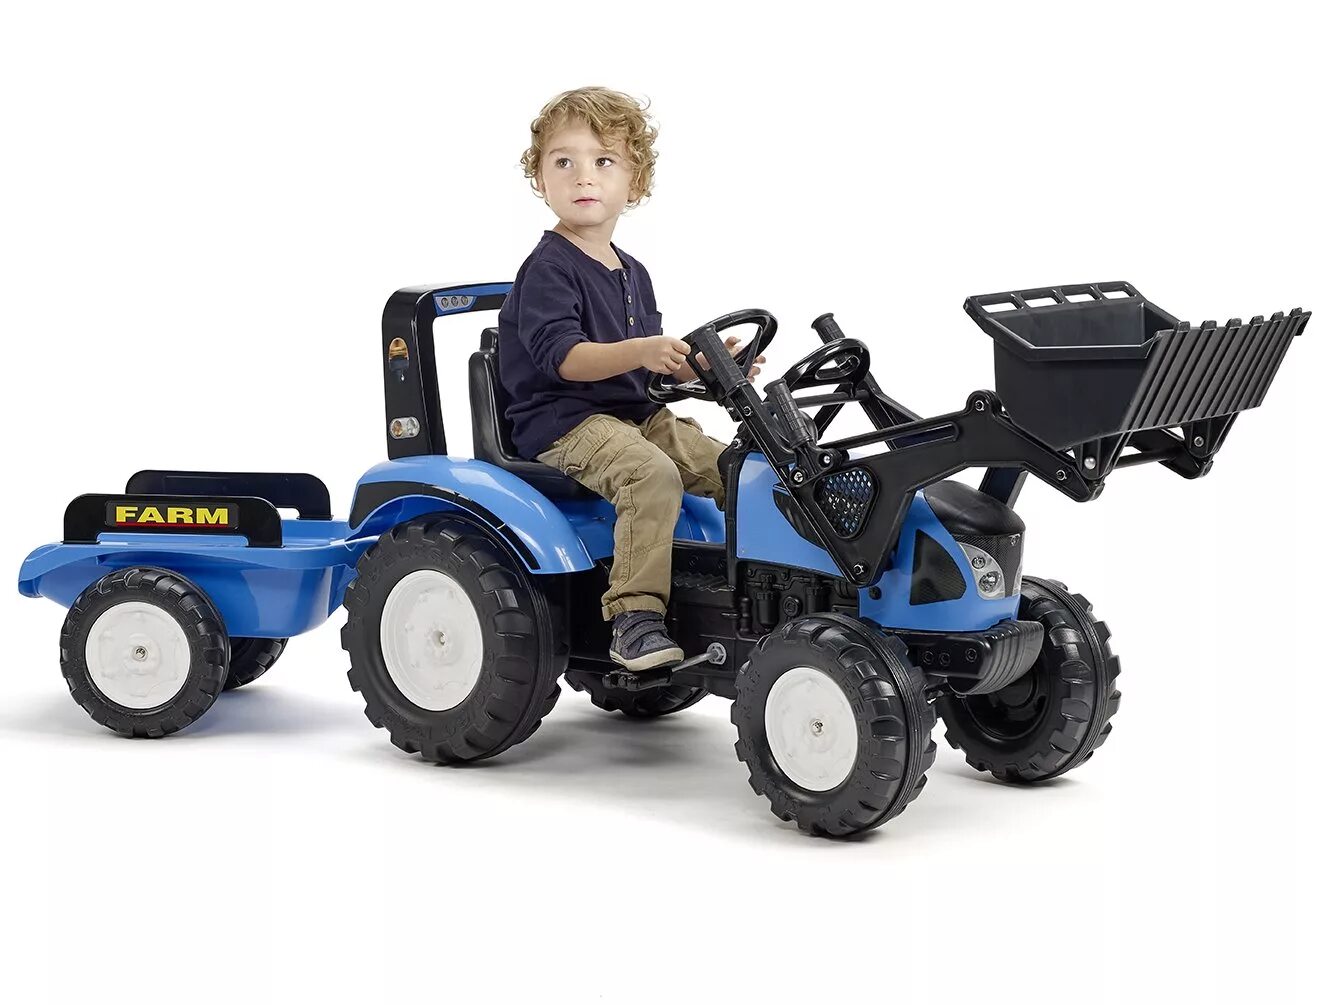 Супериор трактор педальный. Трактор педальный Ranchero. Синий трактор с педалями и прицепом. Трактор большой для детей с педалями. Трактора для детей 7 лет